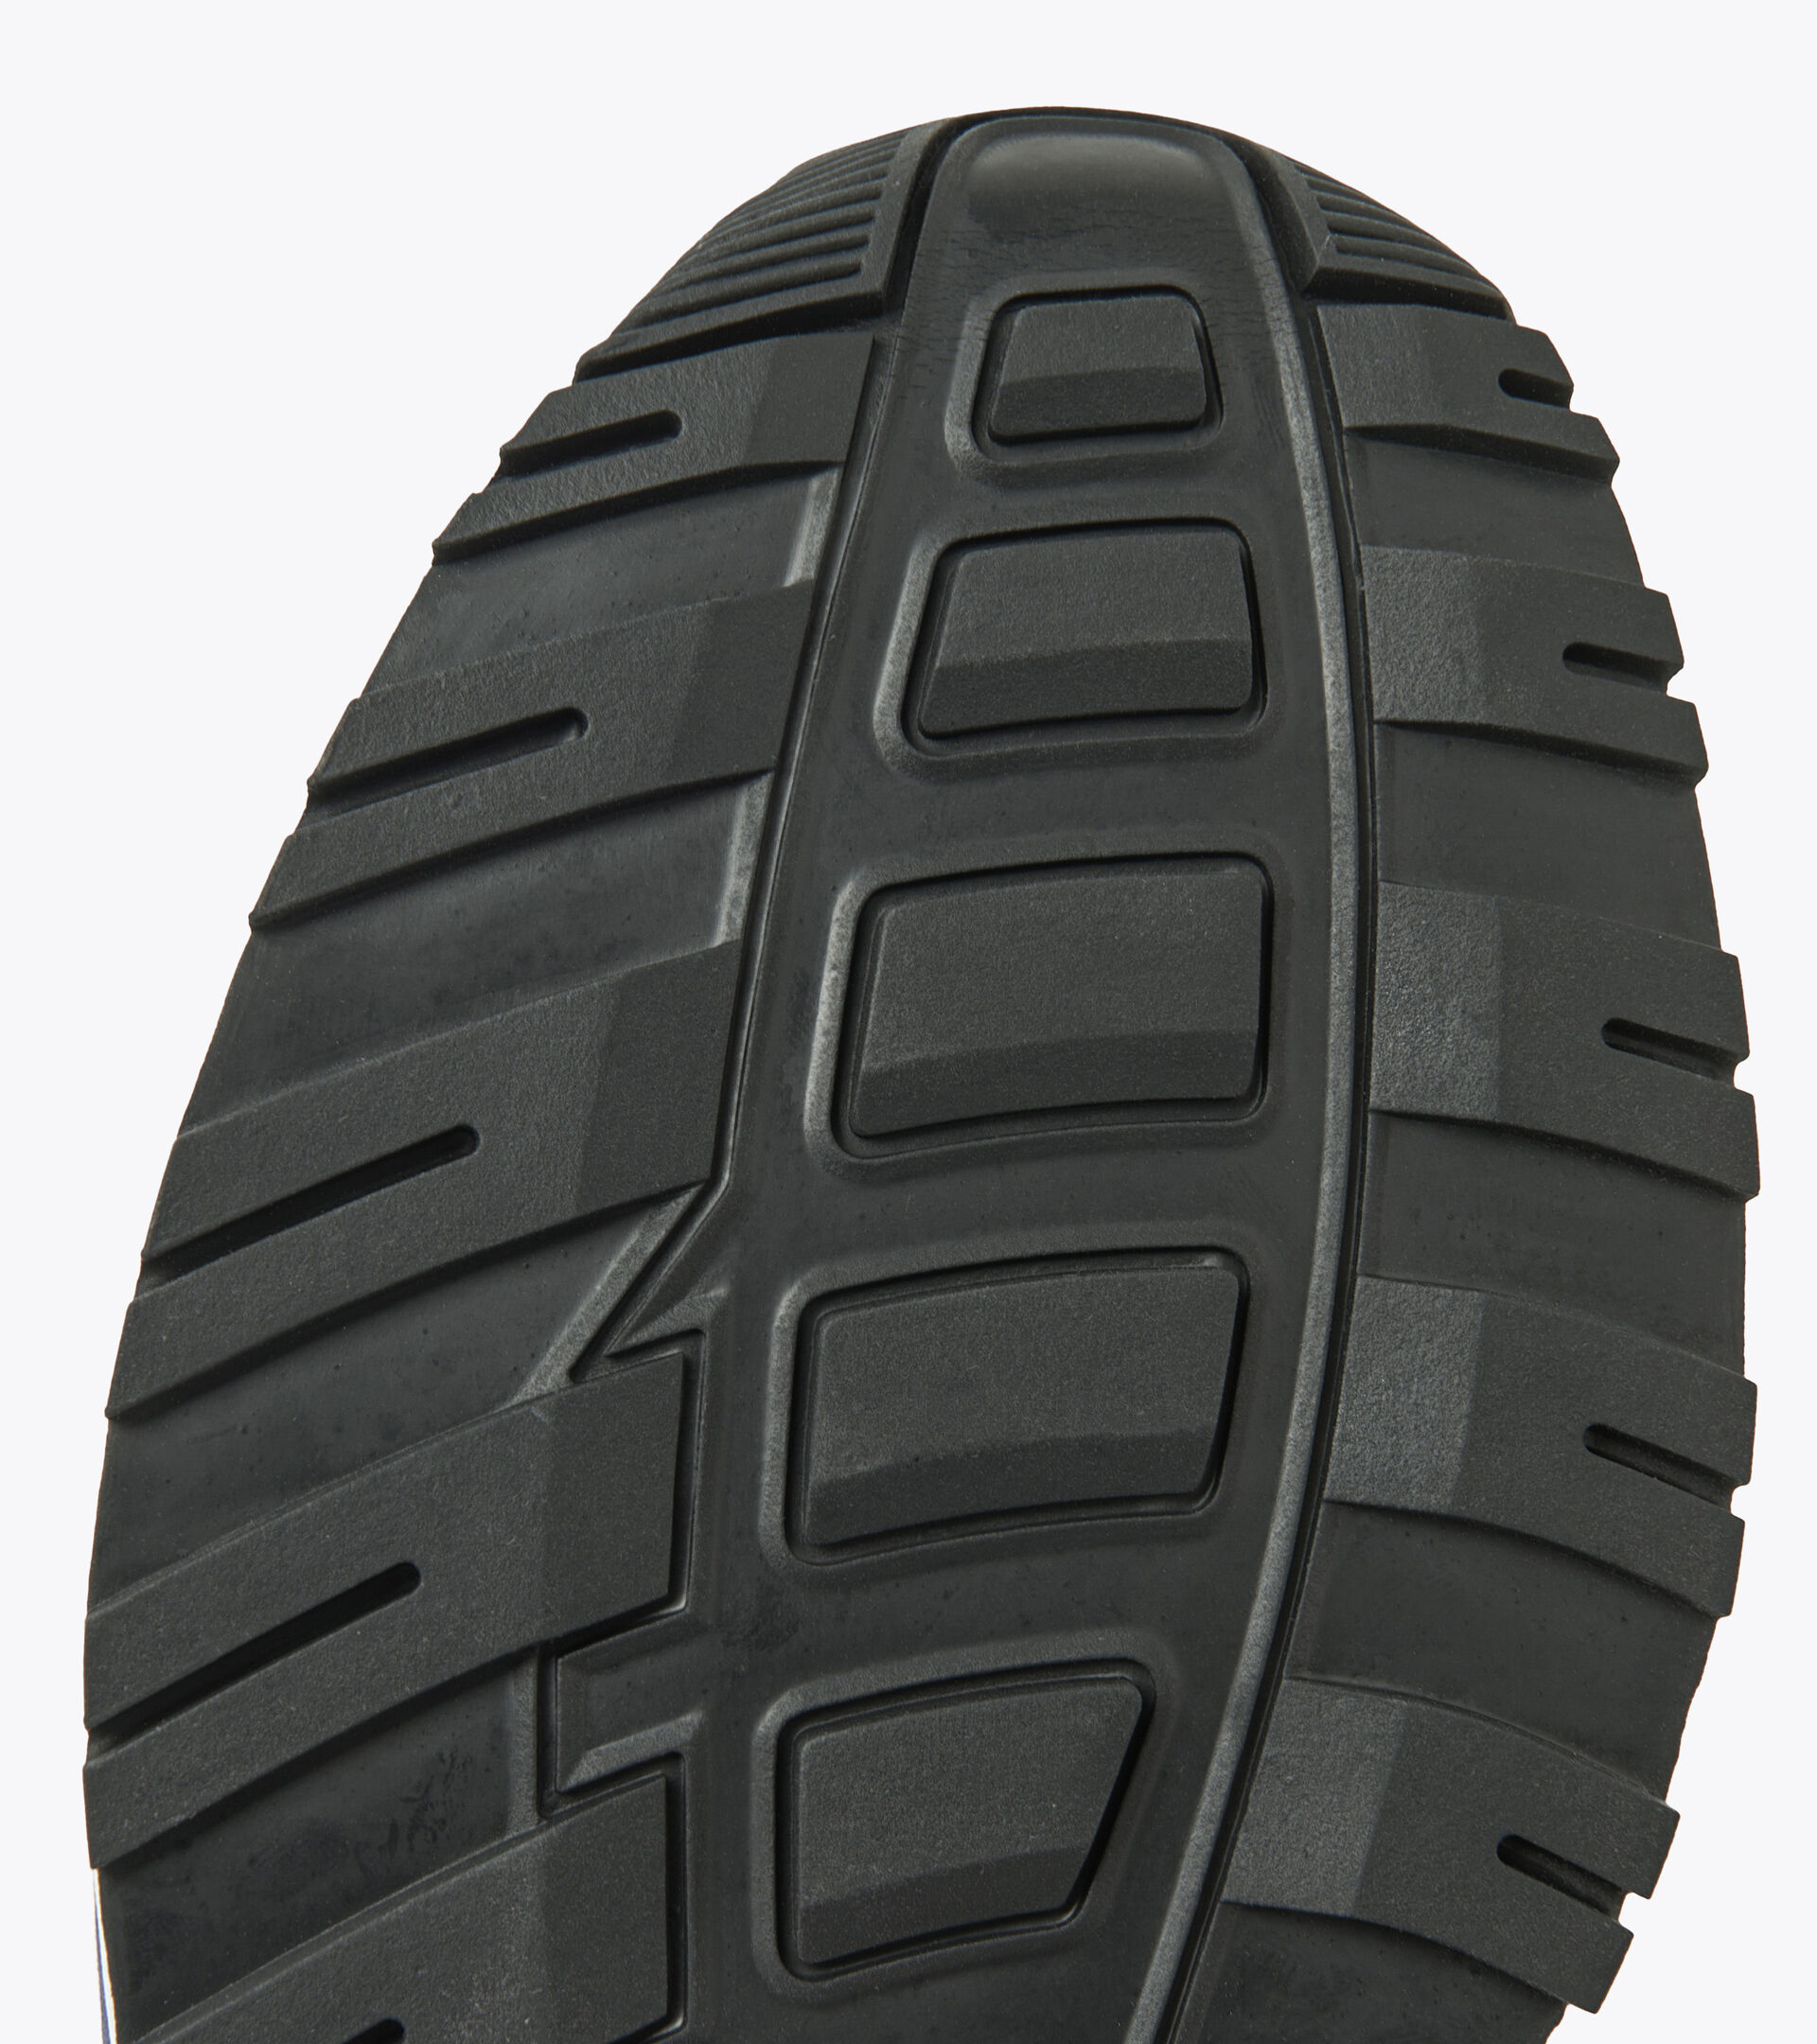 Zapatillas deportivas - Unisex N902 AZUL OSCURO/VIOLETA - Diadora